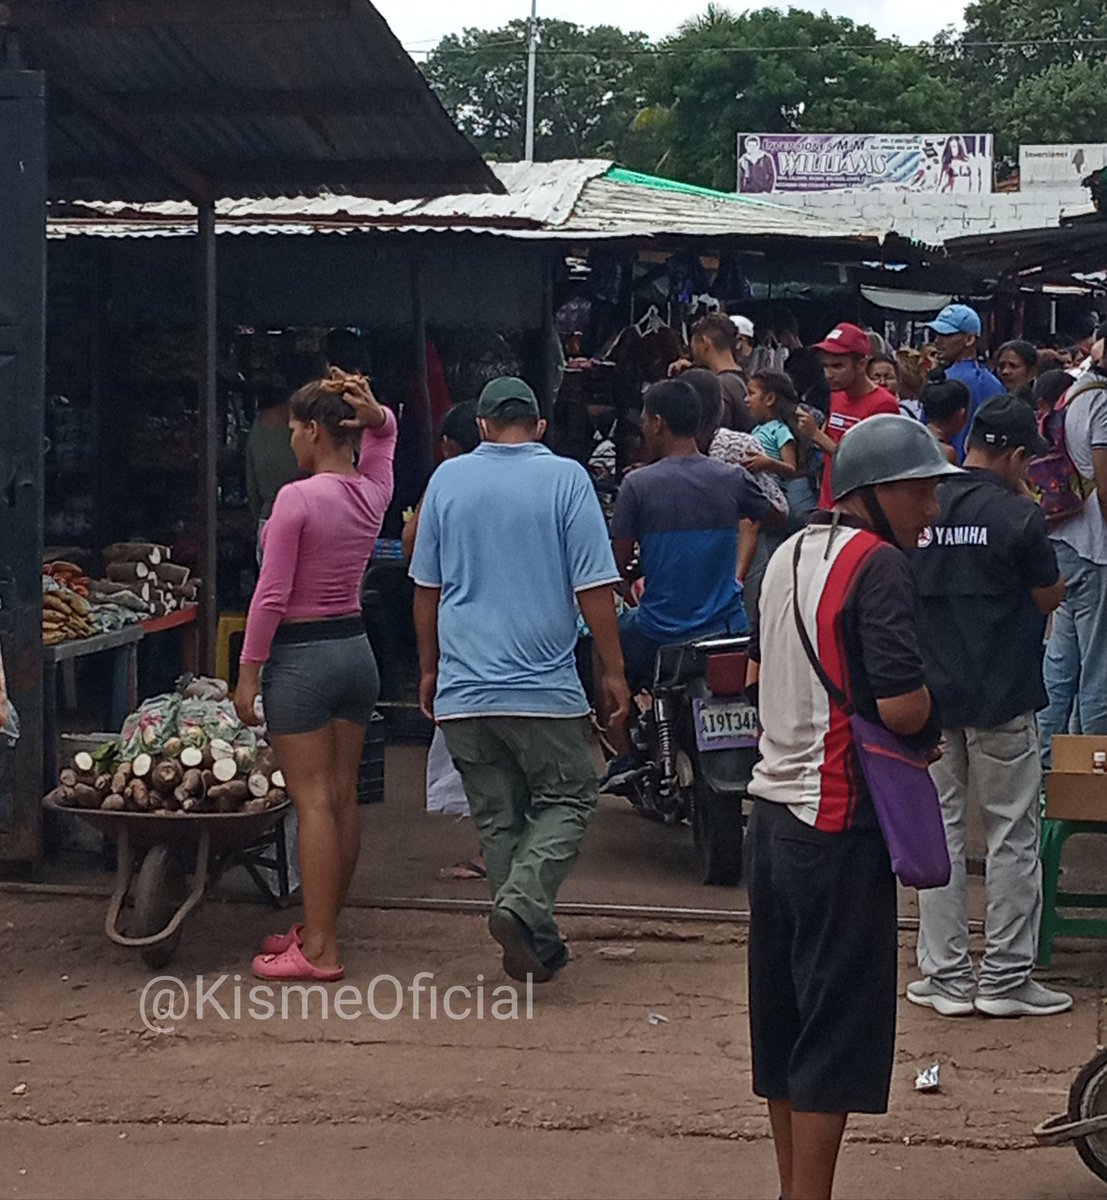 #Amazonas #12Jun Un sábado normal en el Mercado Urdaneta de #PuertoAyacucho. La responsabilidad es nuestra, sin medidas de bioseguridad, no lograremos la contención del virus del #COVIDー19.

#UsaElTapaboca😷